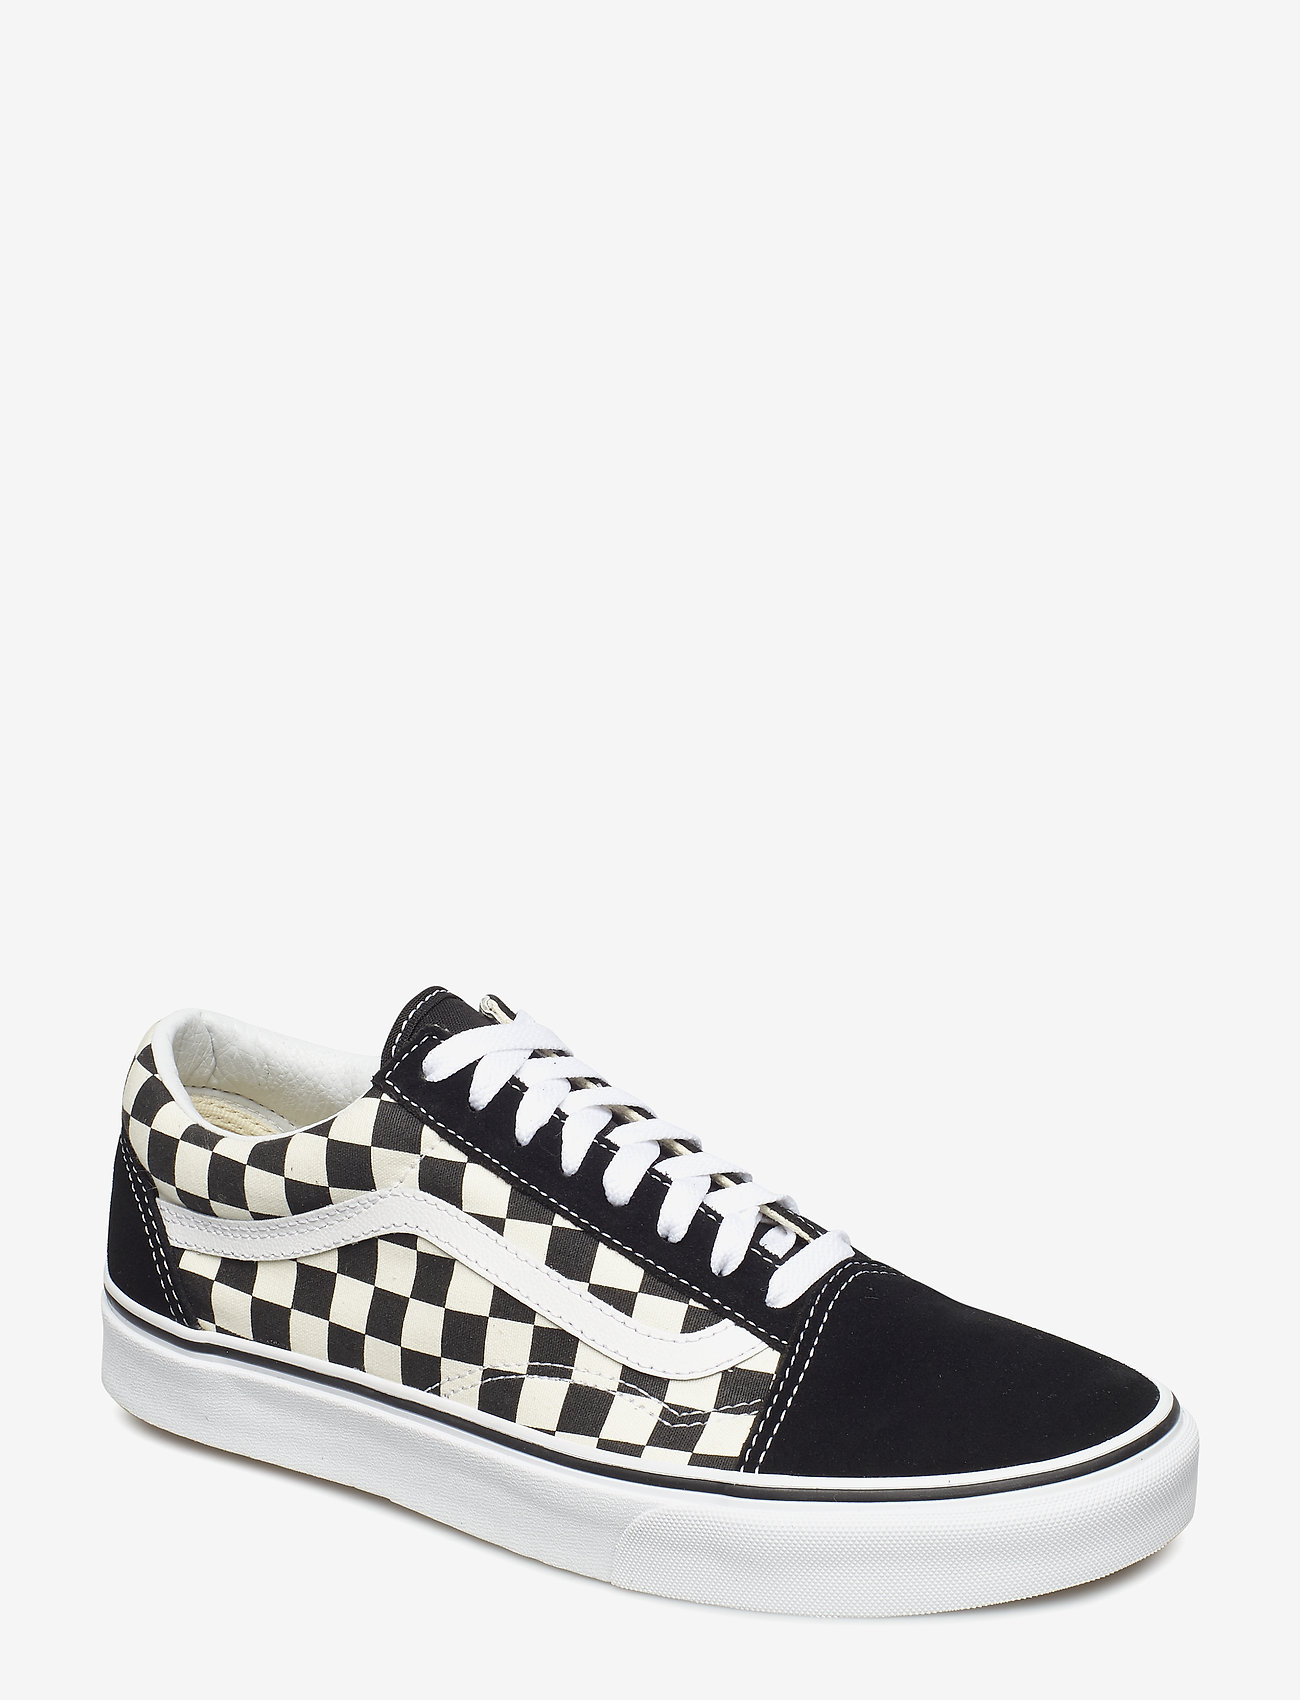 VANS - UA Old Skool - low top sneakers - checkerboard black/white - 0